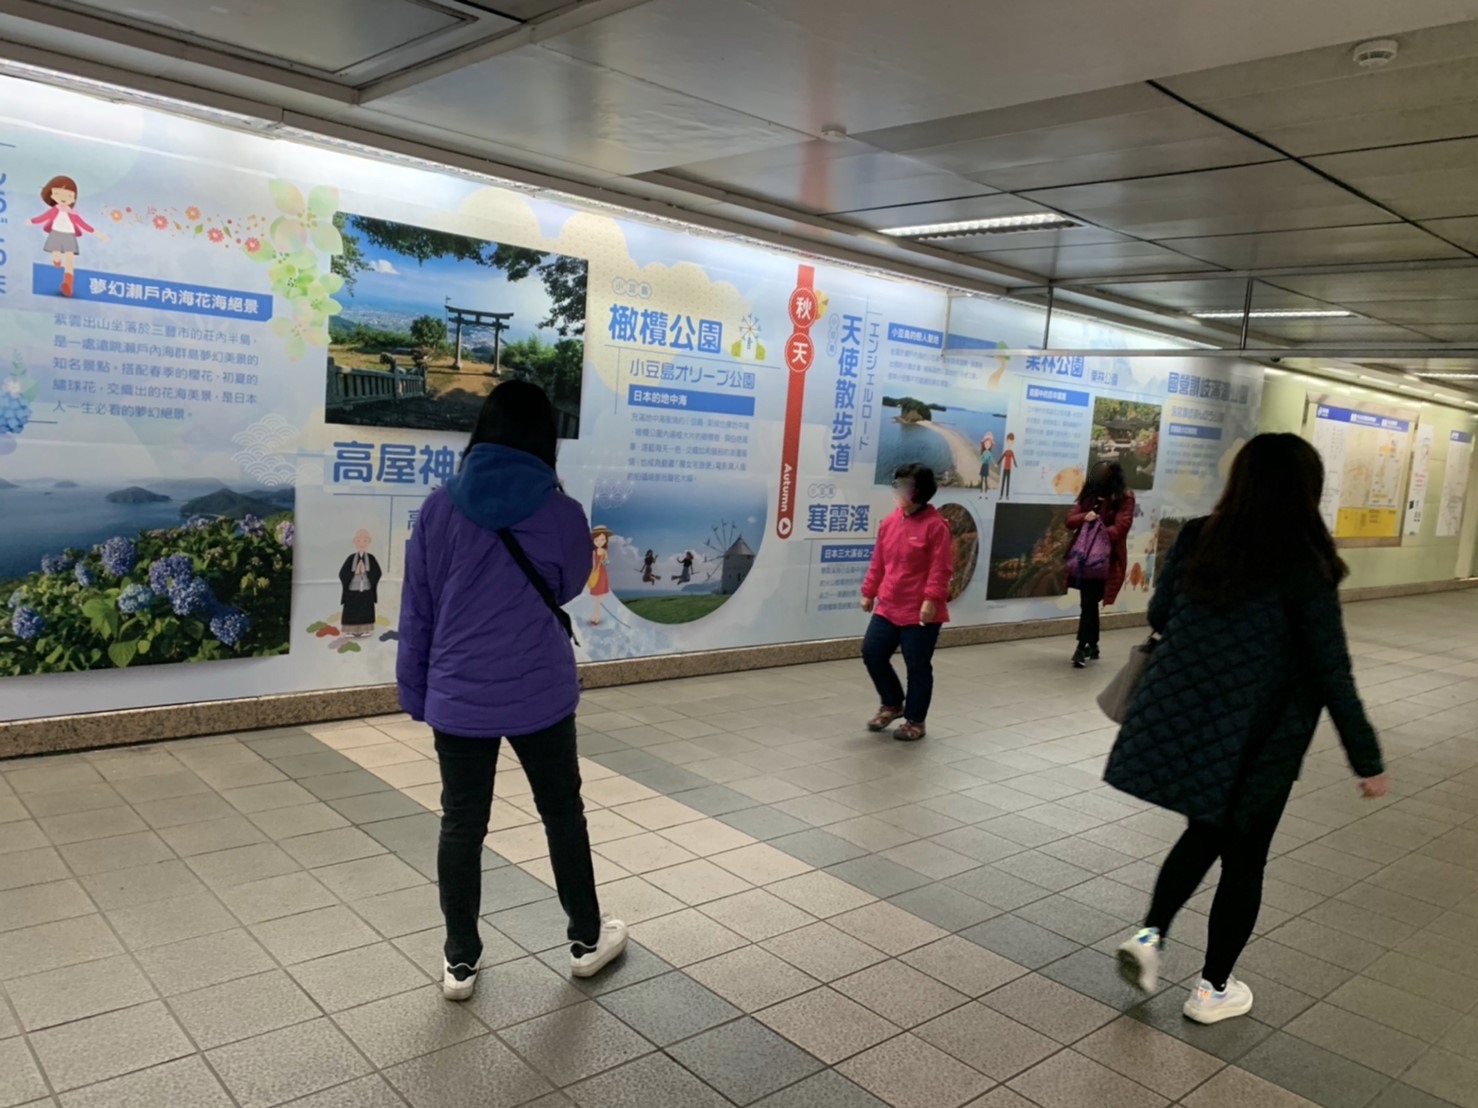 台北MRT中山駅改札前巨大広告 後半